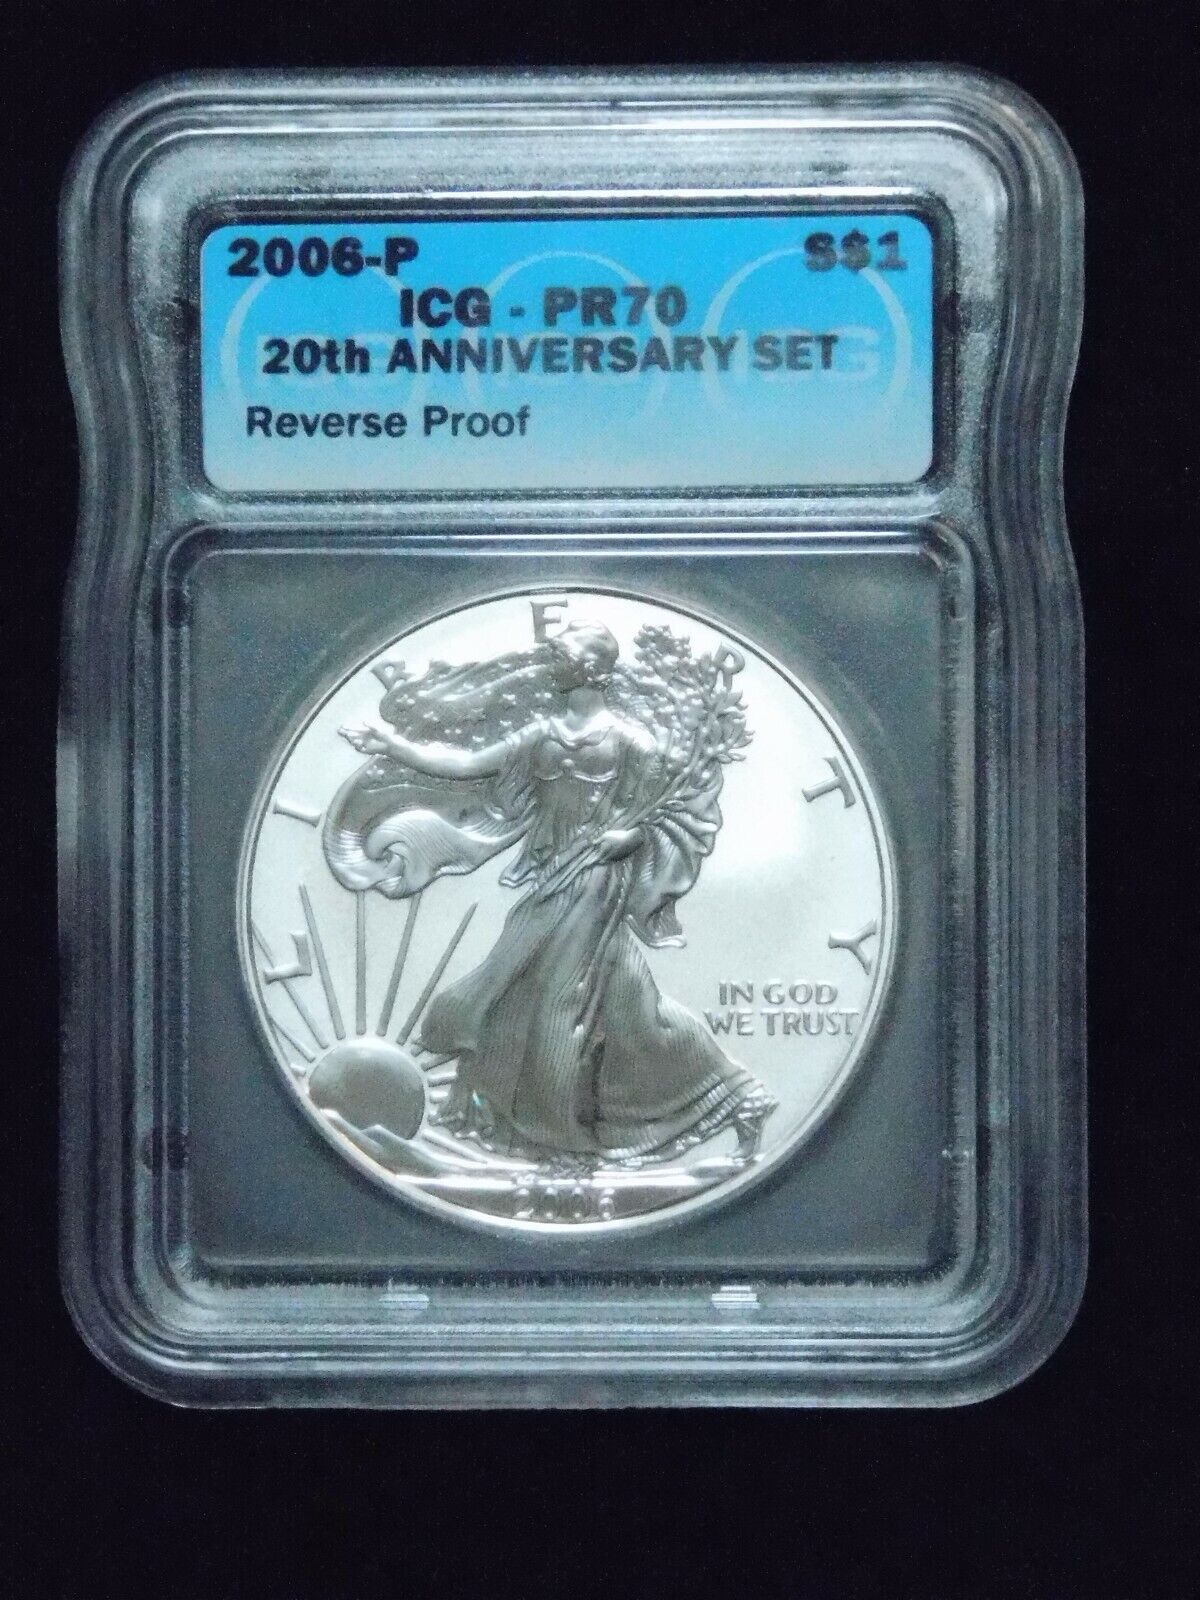 2006-P $1 American Silver Eagle - 20th Anniversary Set - Reverse